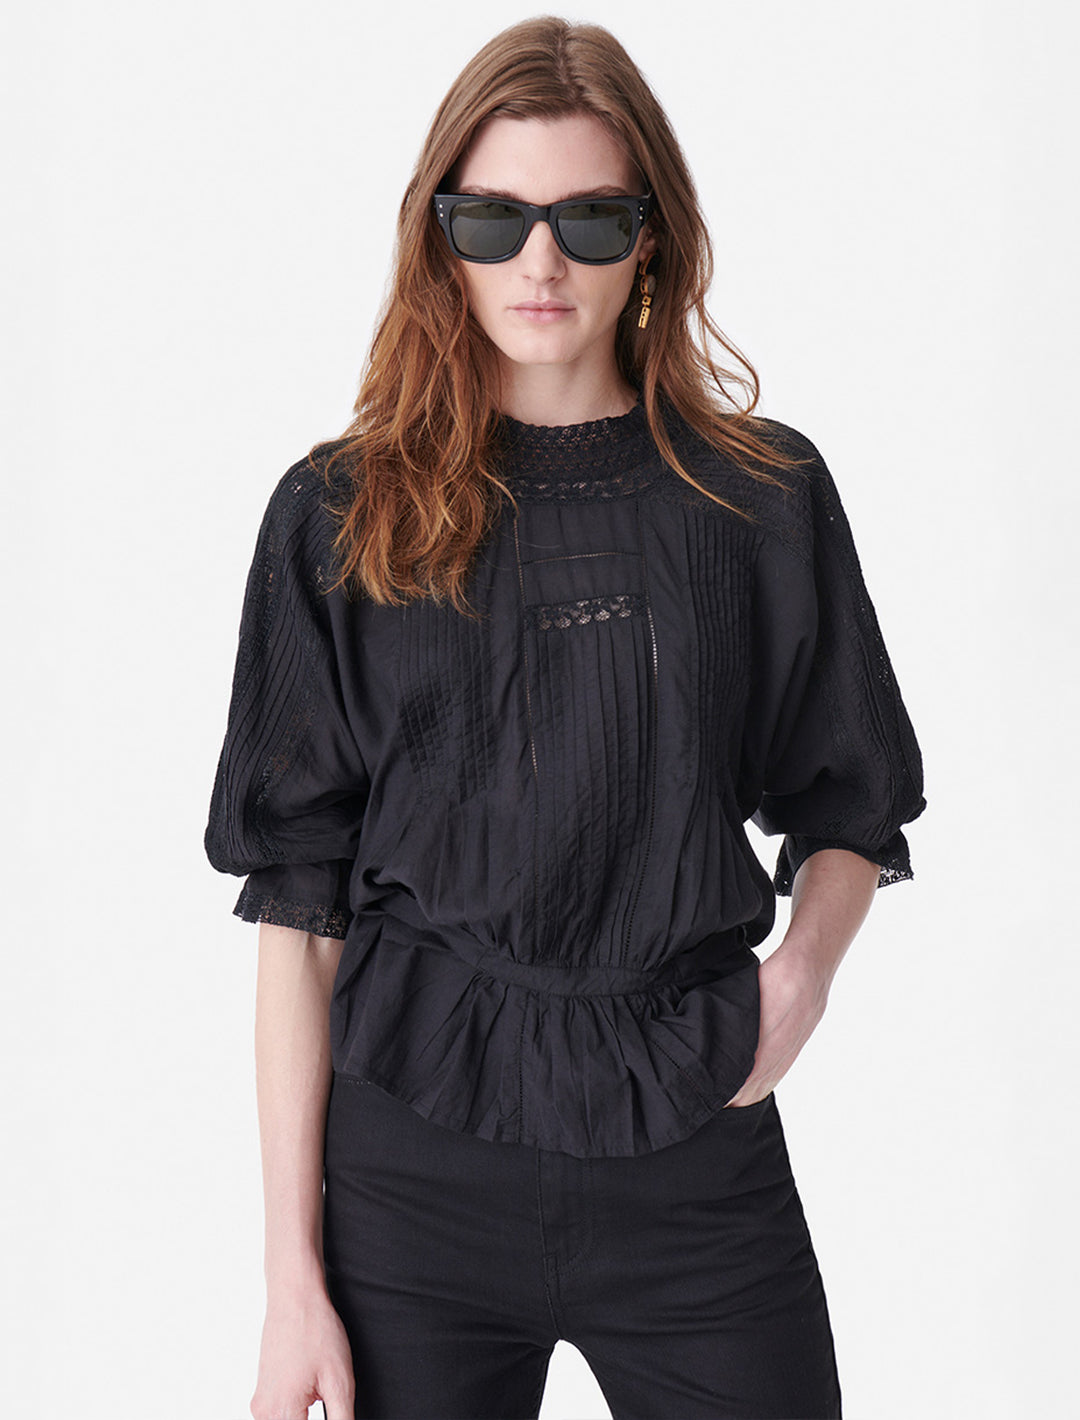 Model wearing Vanessa Bruno's viva blouse in noir.